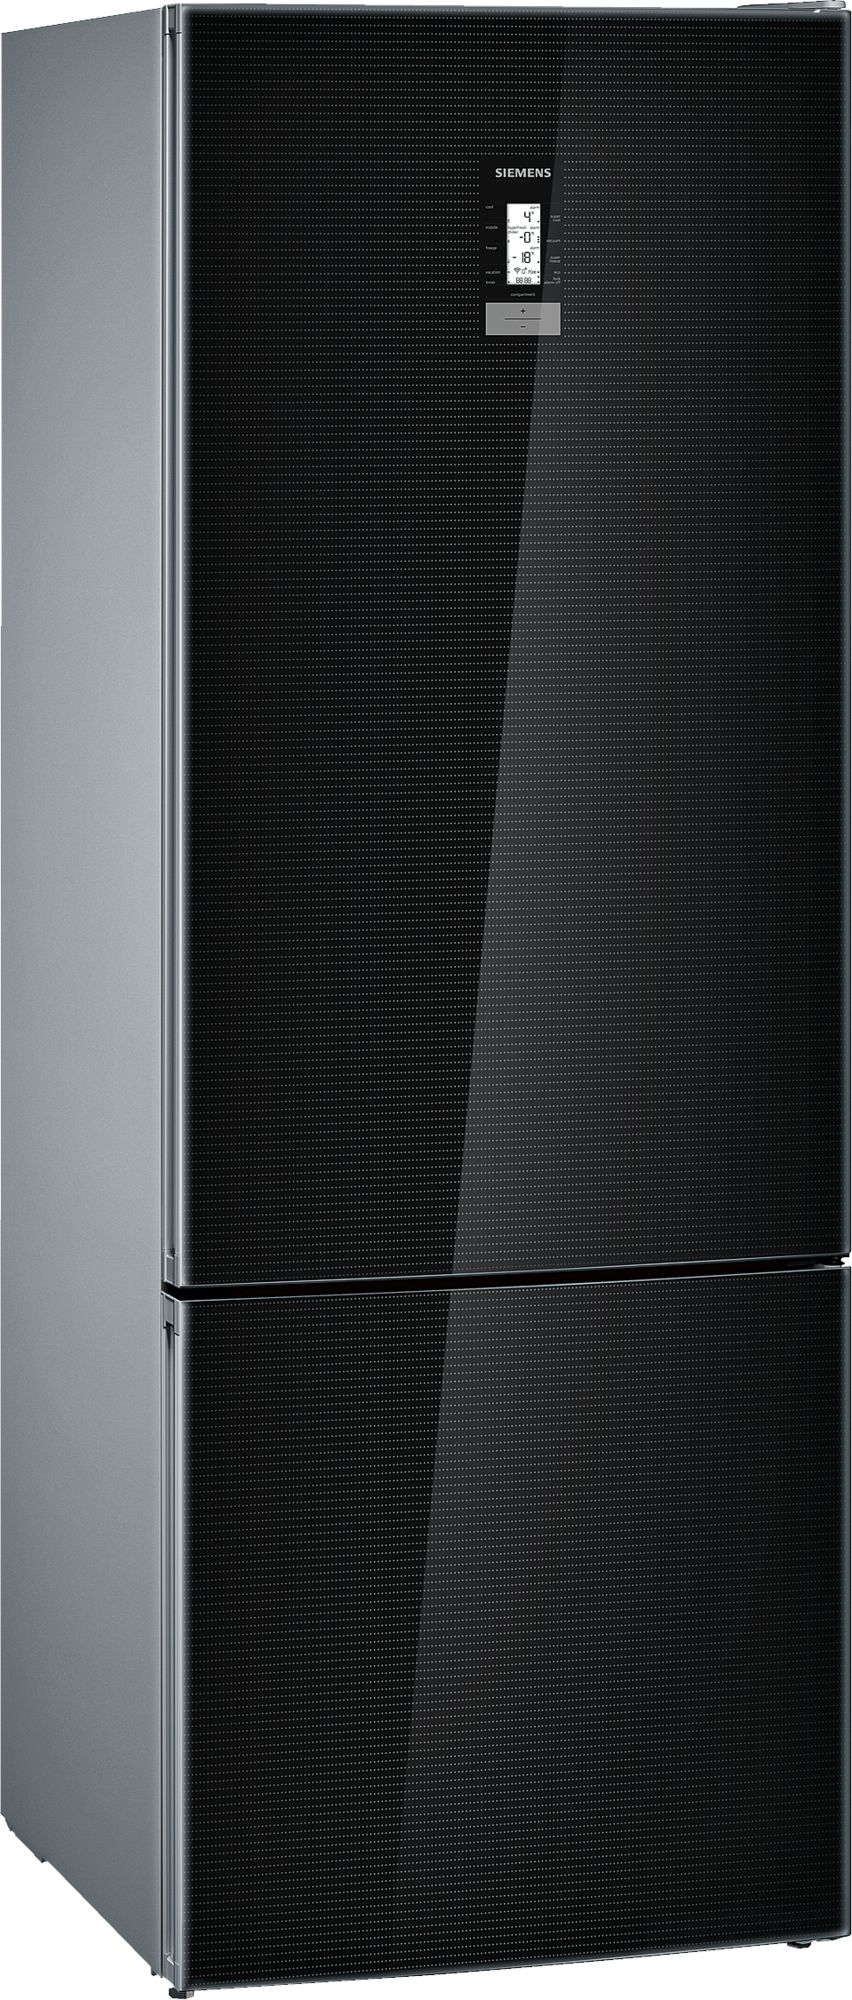 iQ700 Alttan Donduruculu Buzdolabı 193 x 70 cm siyah